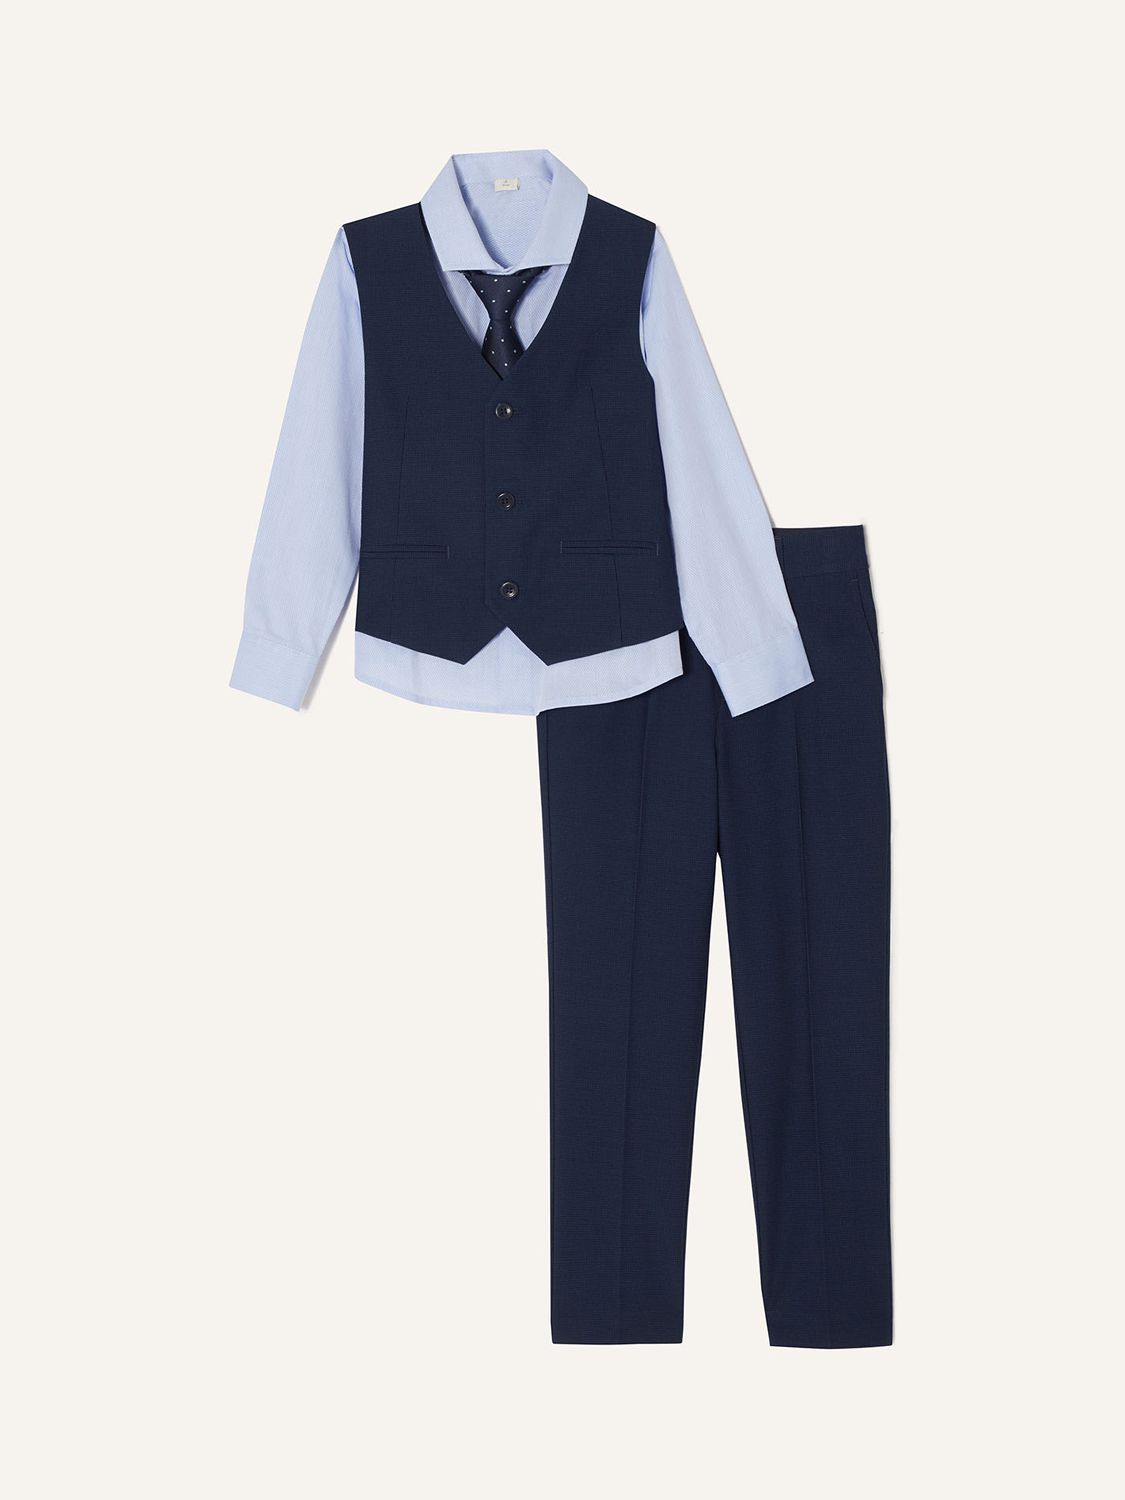 Adam Five-Piece Suit Blue, Boys' Suits & Sets